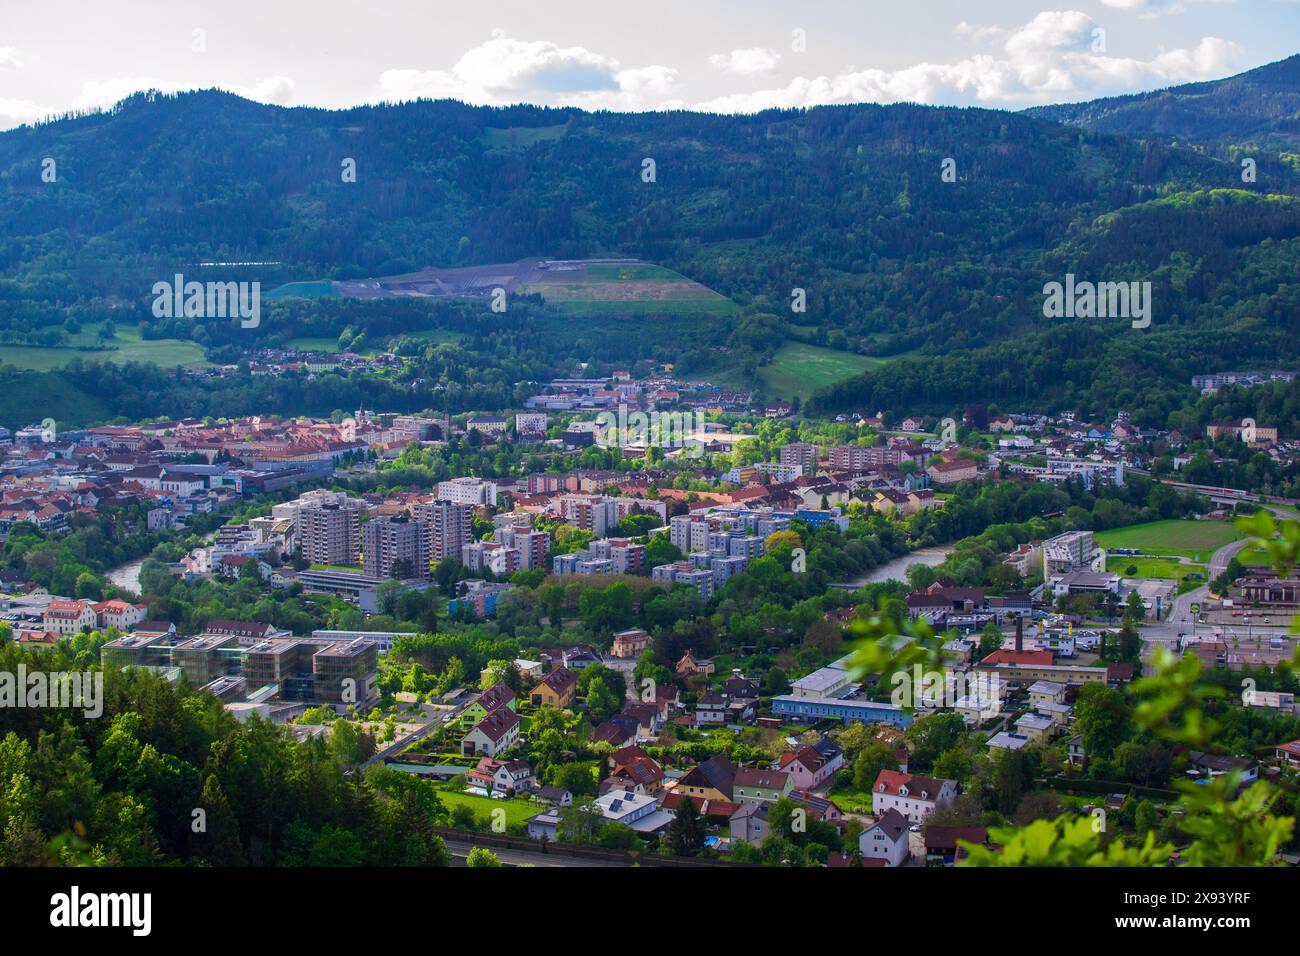 Vista aerea di una piccola città austriaca ai piedi delle Alpi. Foto Stock